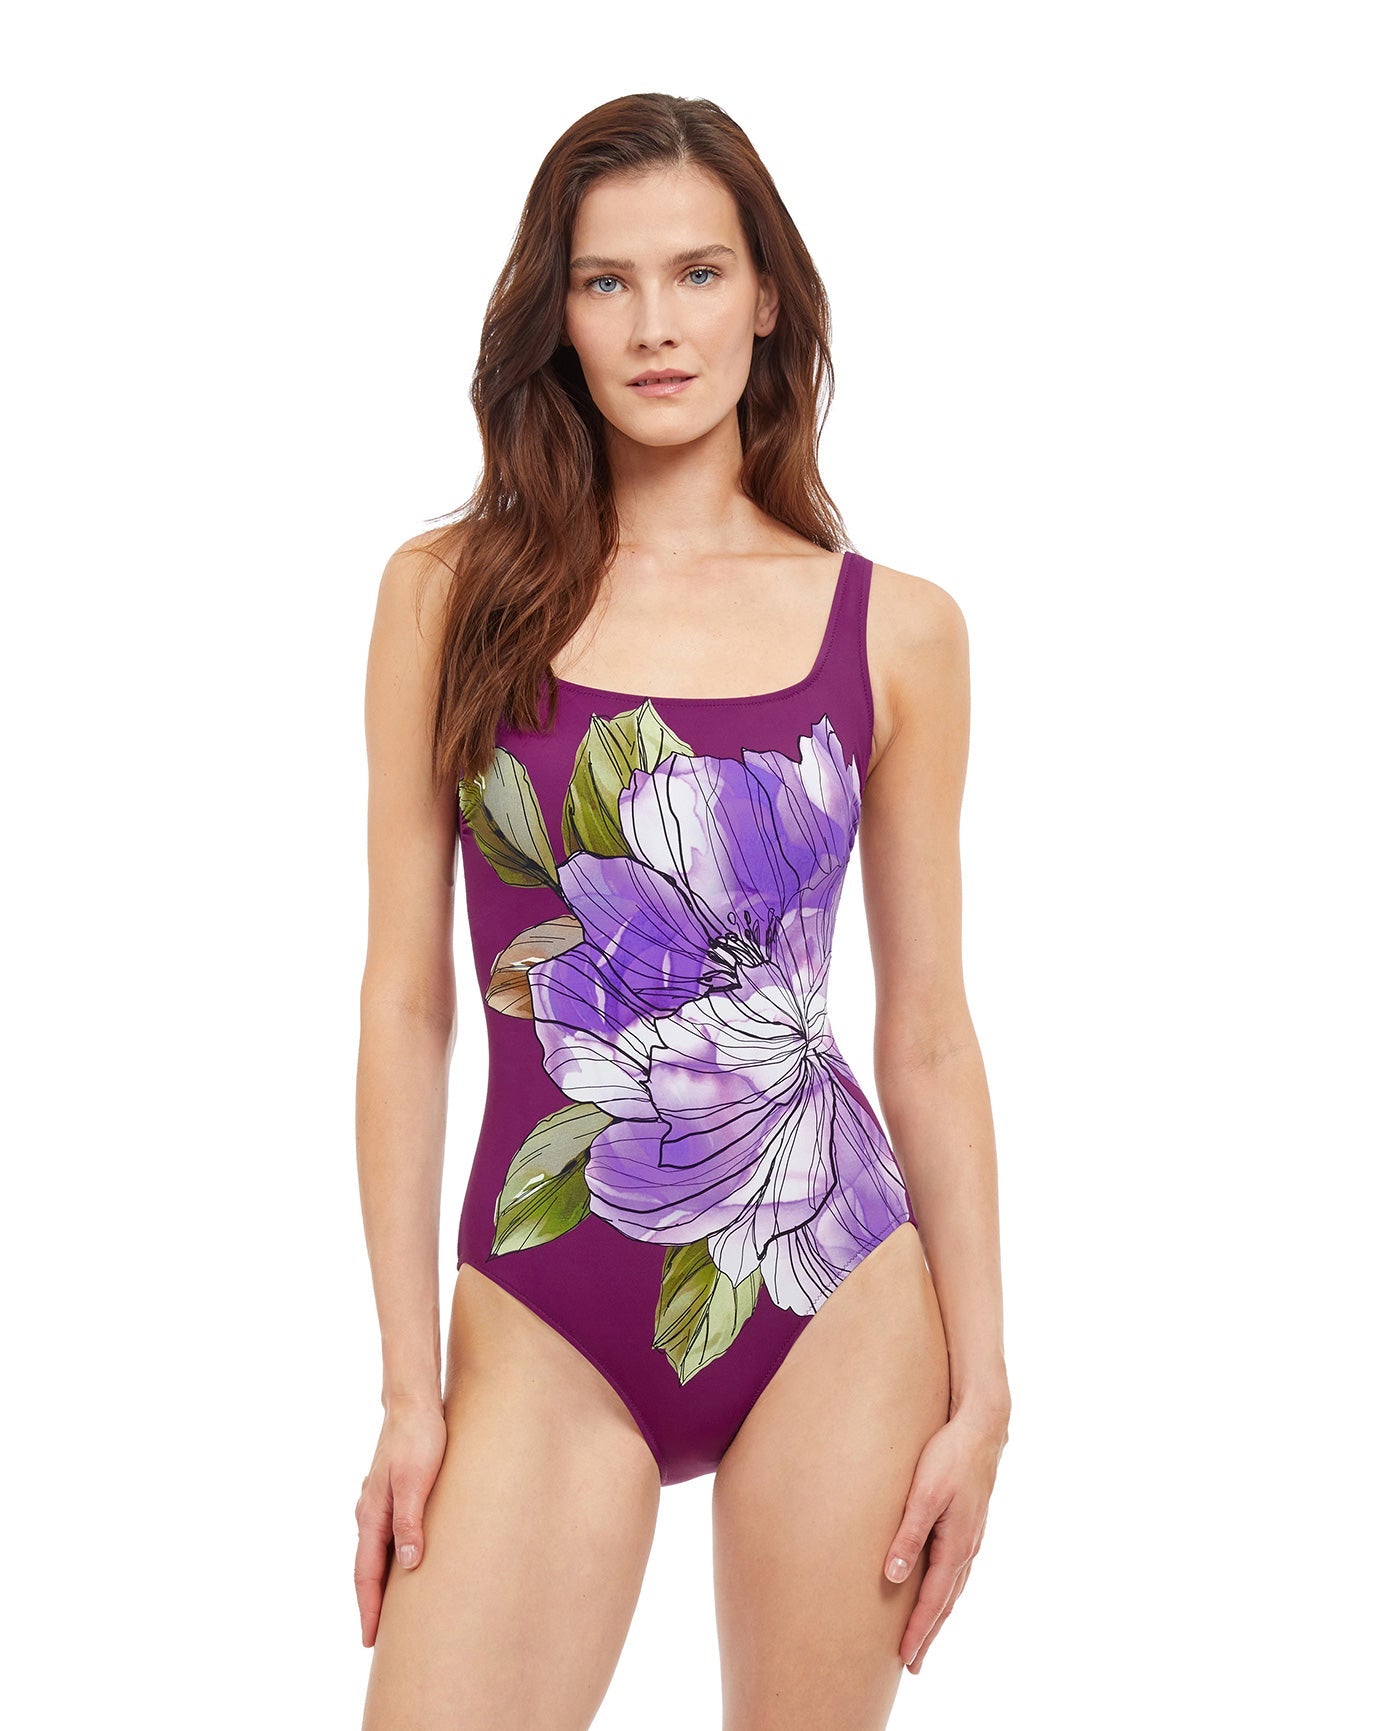 $185 Gottex Women Blue Paradise Floral Square Neck One Piece Swimsuit Size 6